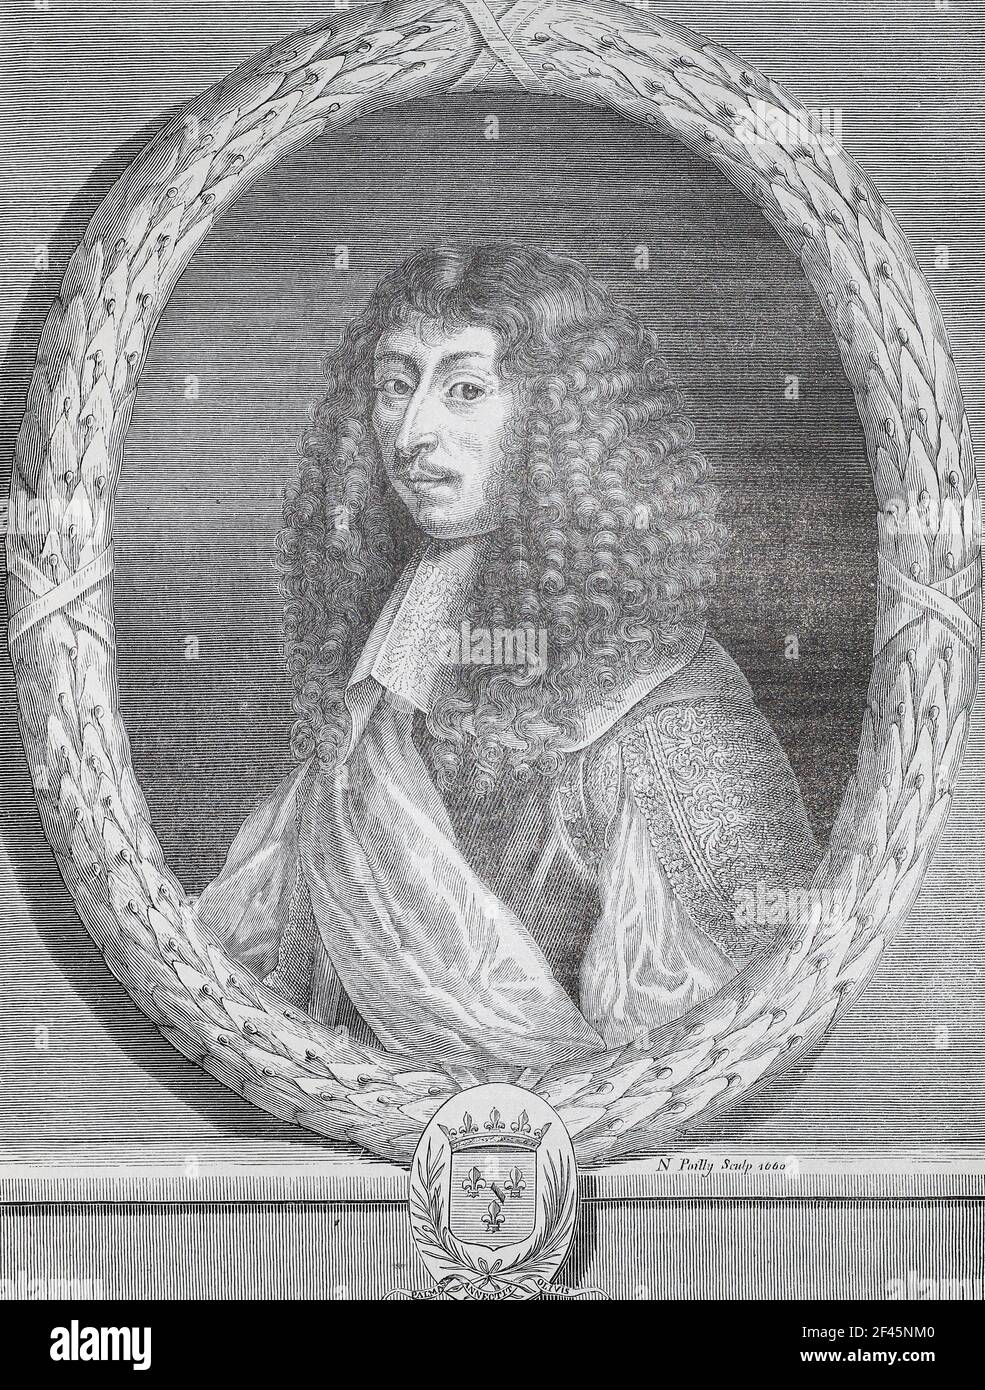 Louis de Bourbon, ou Louis III, Prince de Condé. Gravure de 1660. Louis de Bourbon, ou Louis III, prince de Condé (1668 - 1710), était un prince du sang comme membre de la Maison régnante de Bourbon à la cour française de Louis XIV Né en 1709, il succéda à son père comme prince de Condé, mais il était encore connu sous le titre ducal. Il a été prince pendant moins d'un an. Banque D'Images